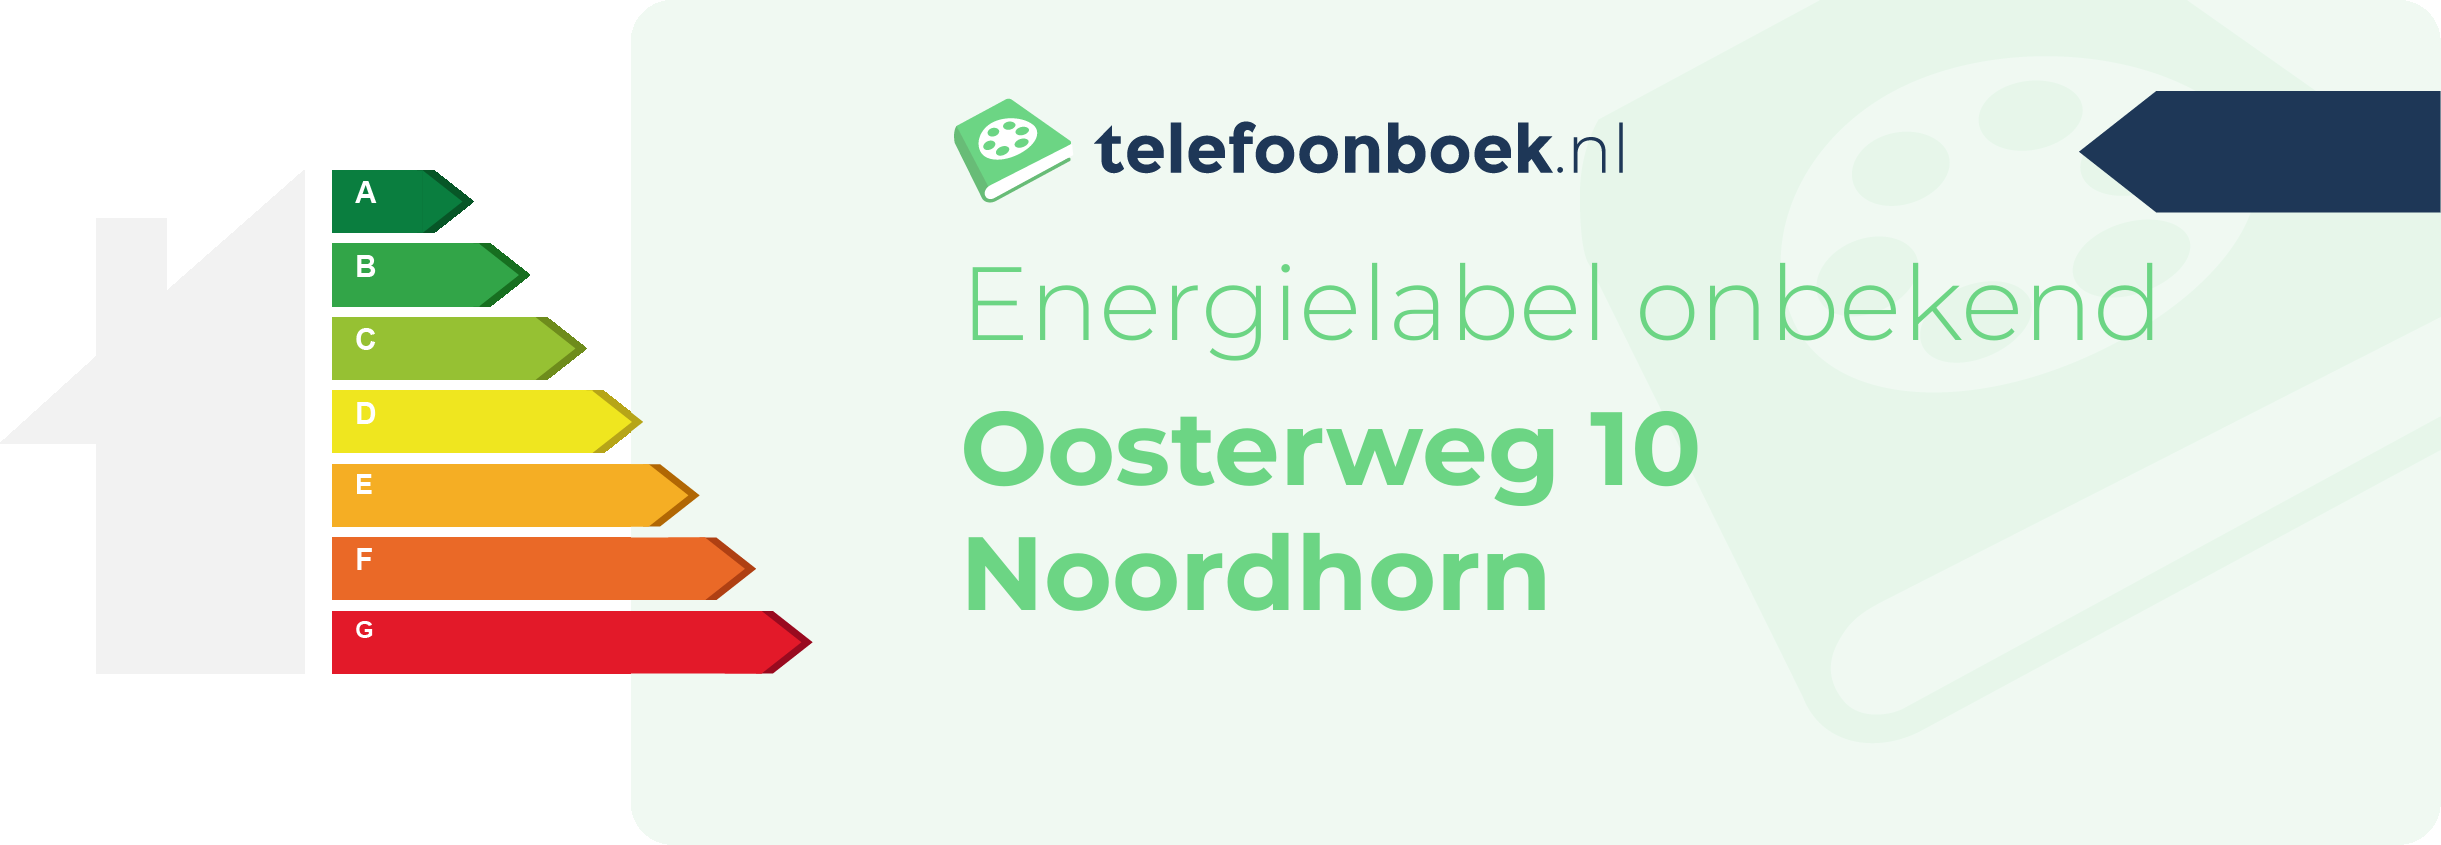 Energielabel Oosterweg 10 Noordhorn